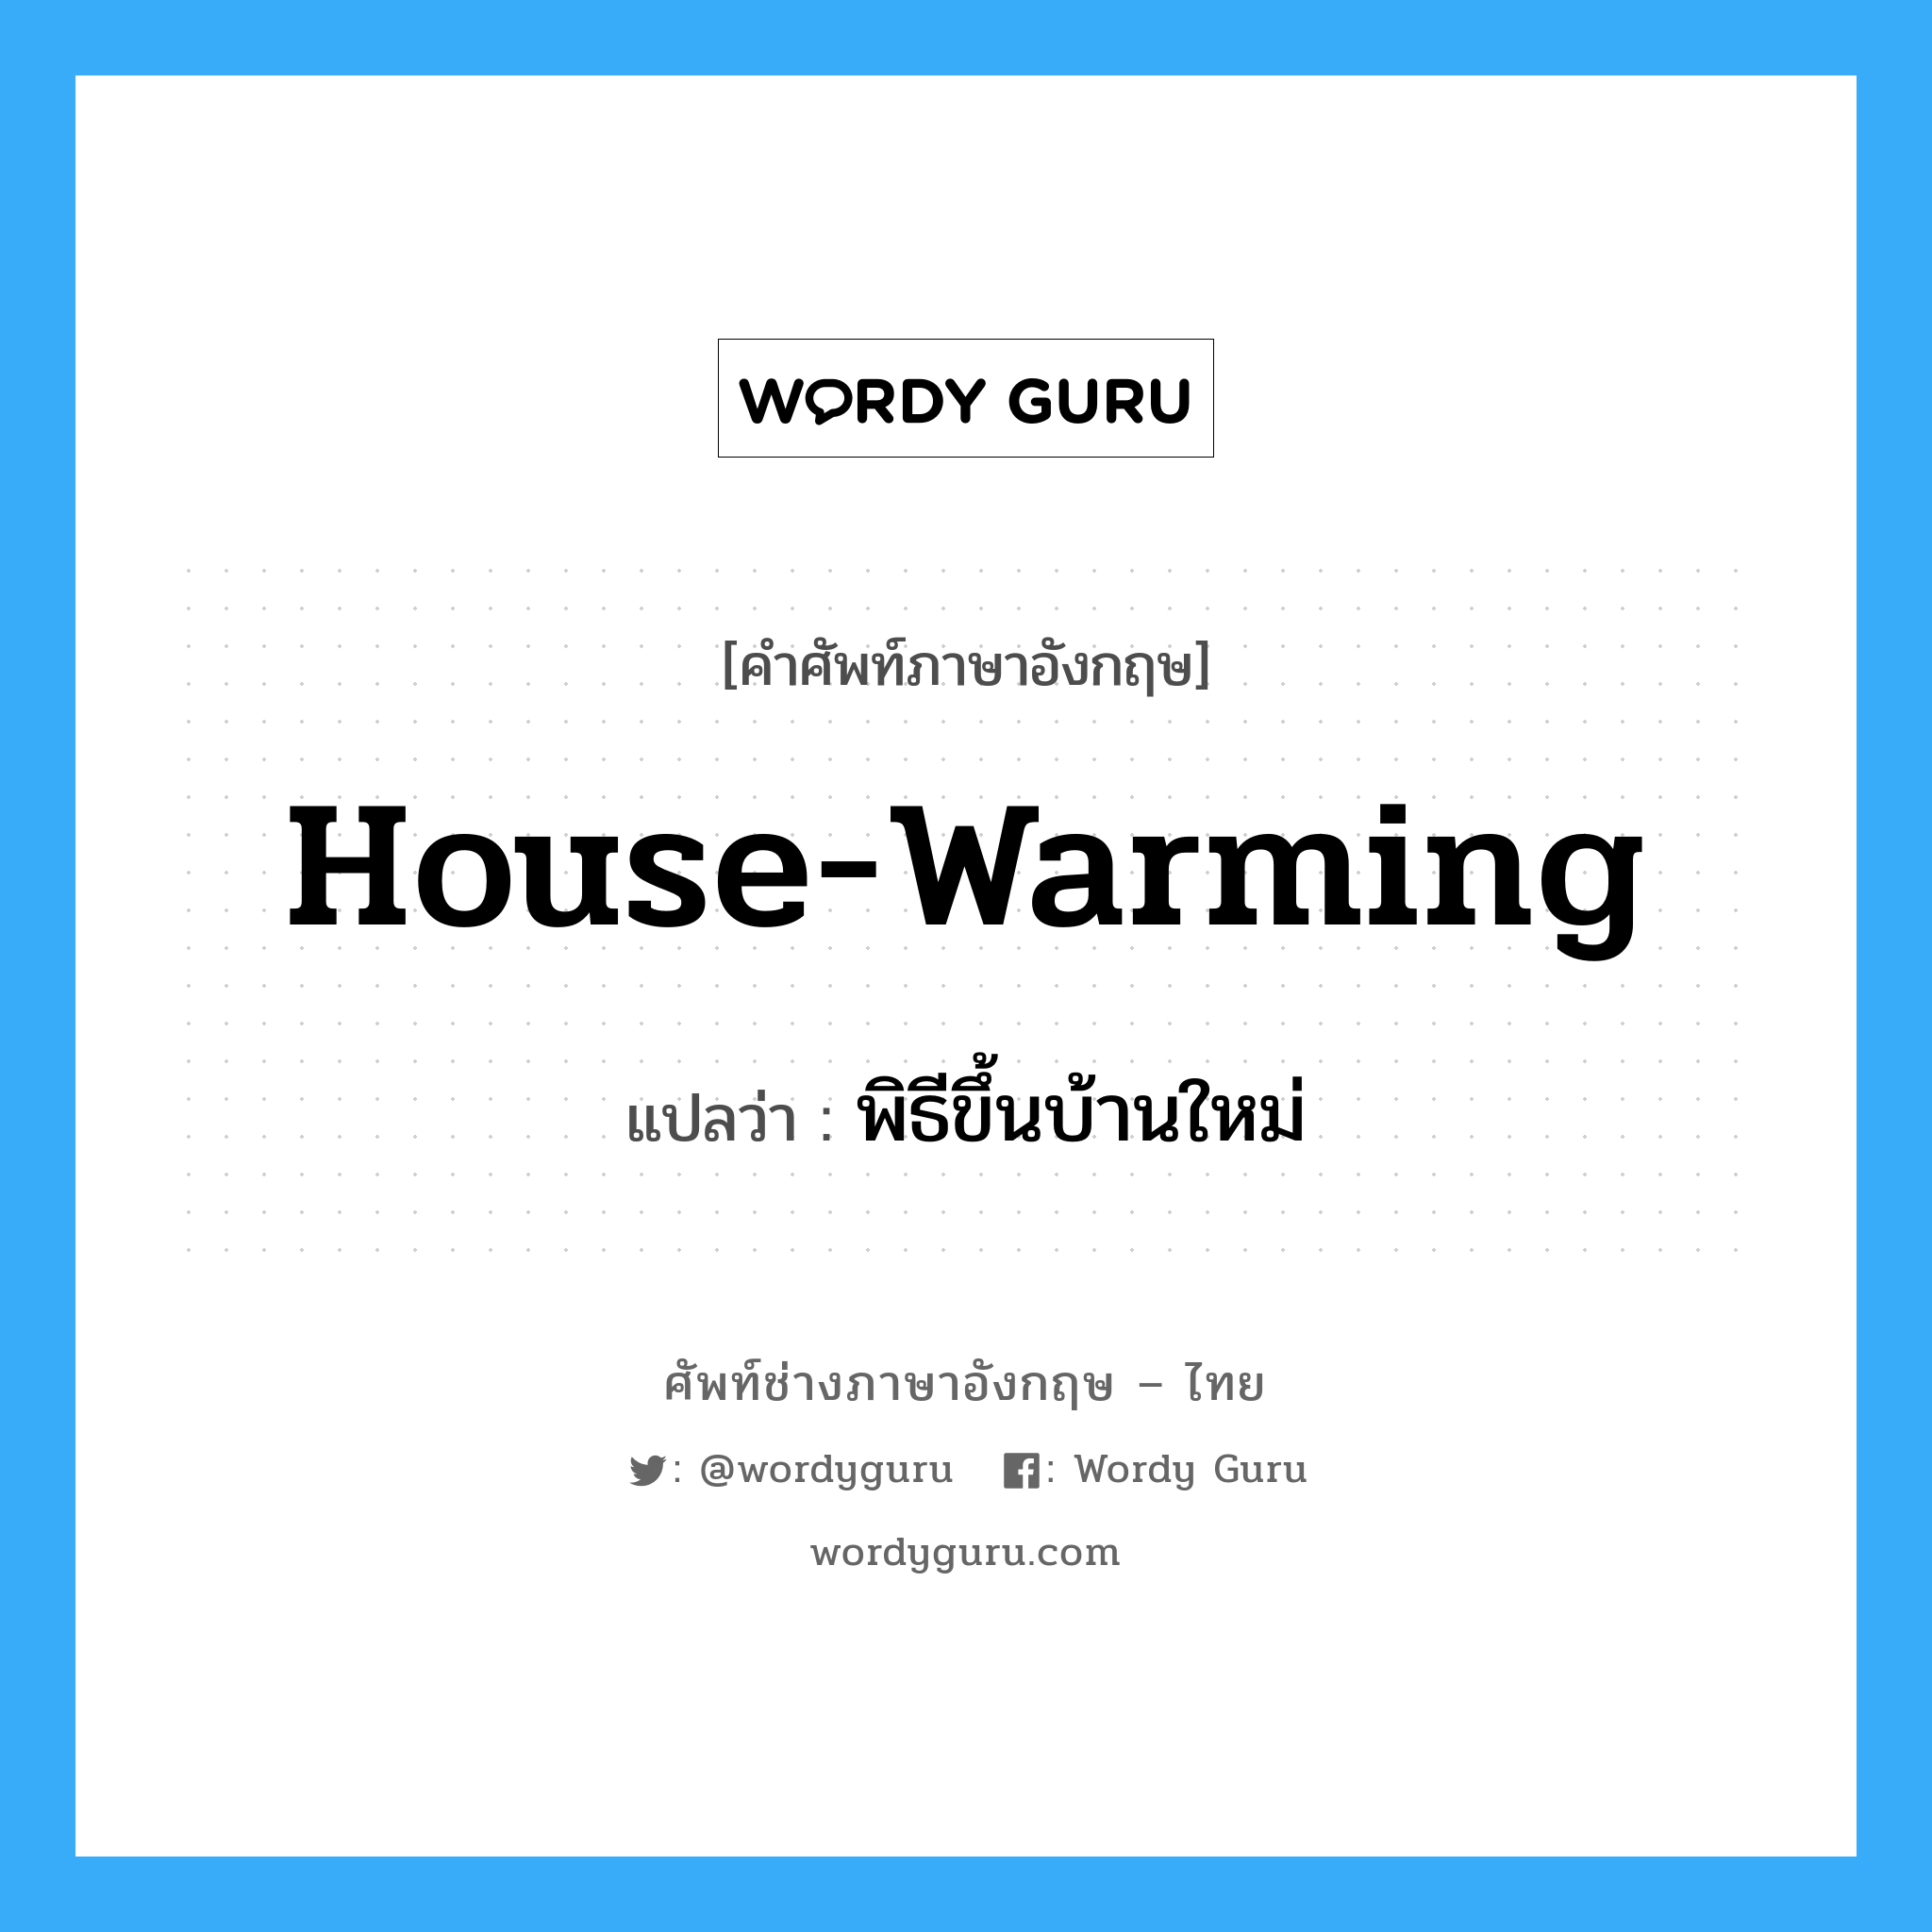 house-warming แปลว่า?, คำศัพท์ช่างภาษาอังกฤษ - ไทย house-warming คำศัพท์ภาษาอังกฤษ house-warming แปลว่า พิธีขึ้นบ้านใหม่